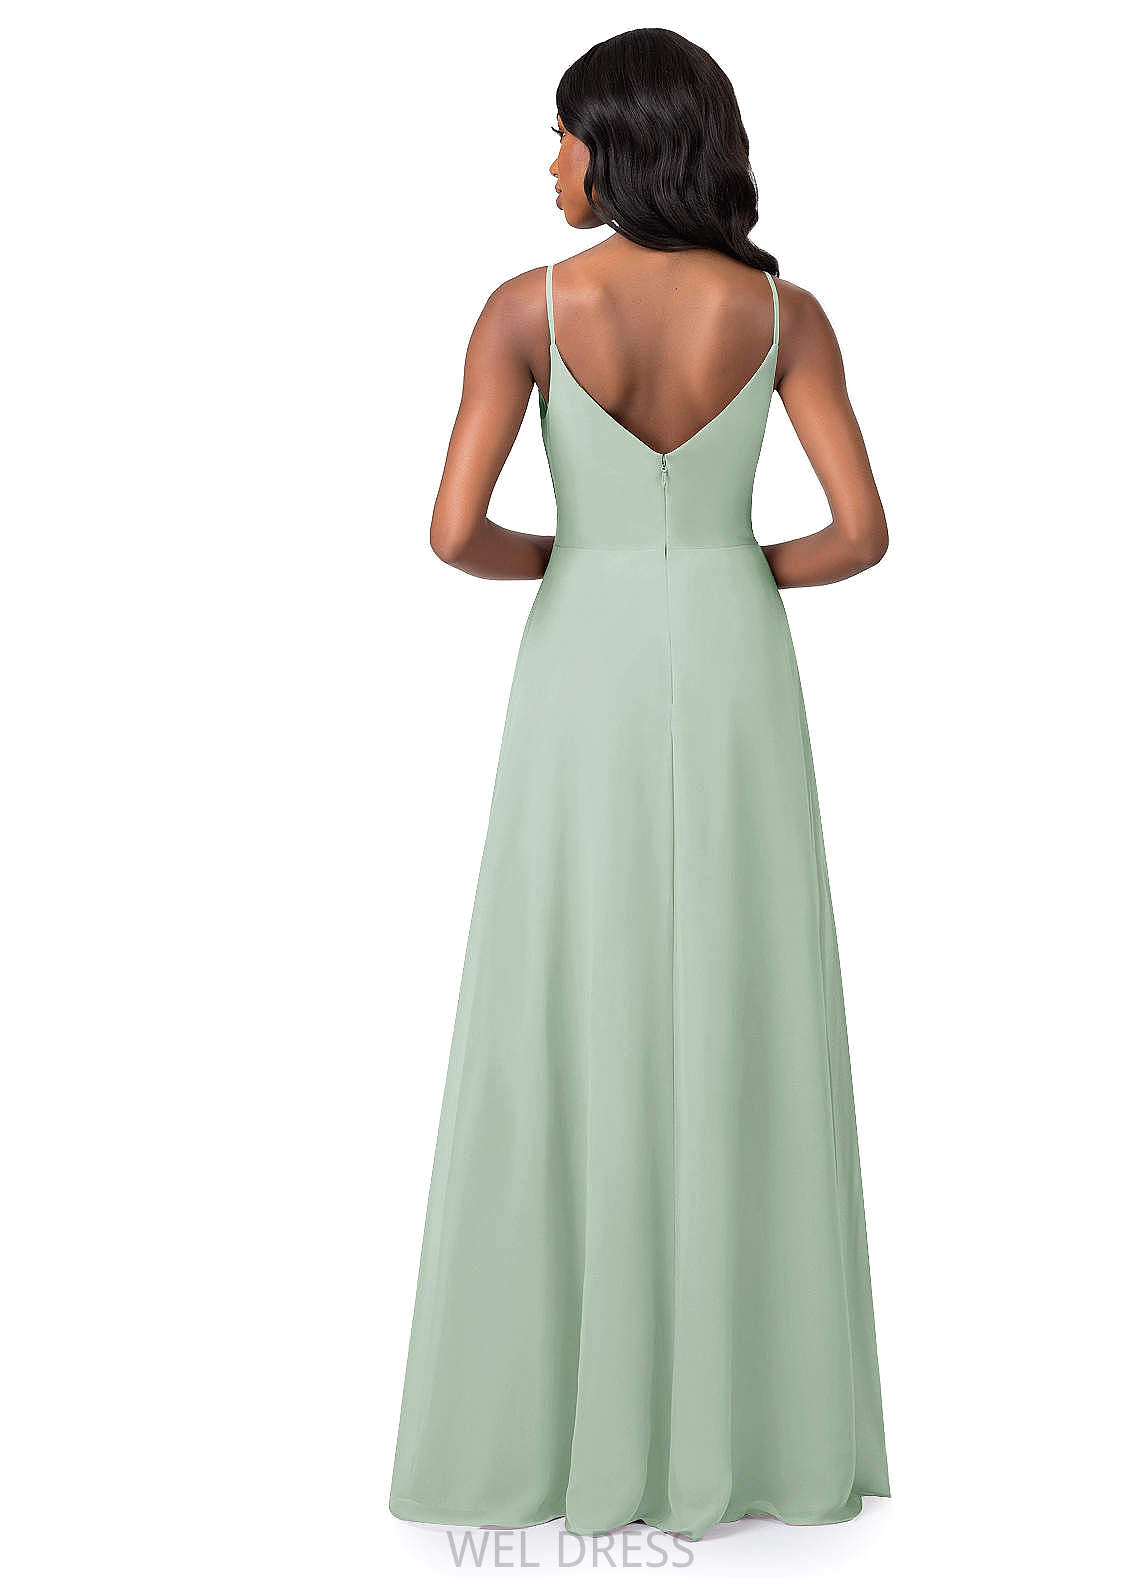 Uerica Natural Waist V-Neck A-Line/Princess Sleeveless Floor Length Bridesmaid Dresses